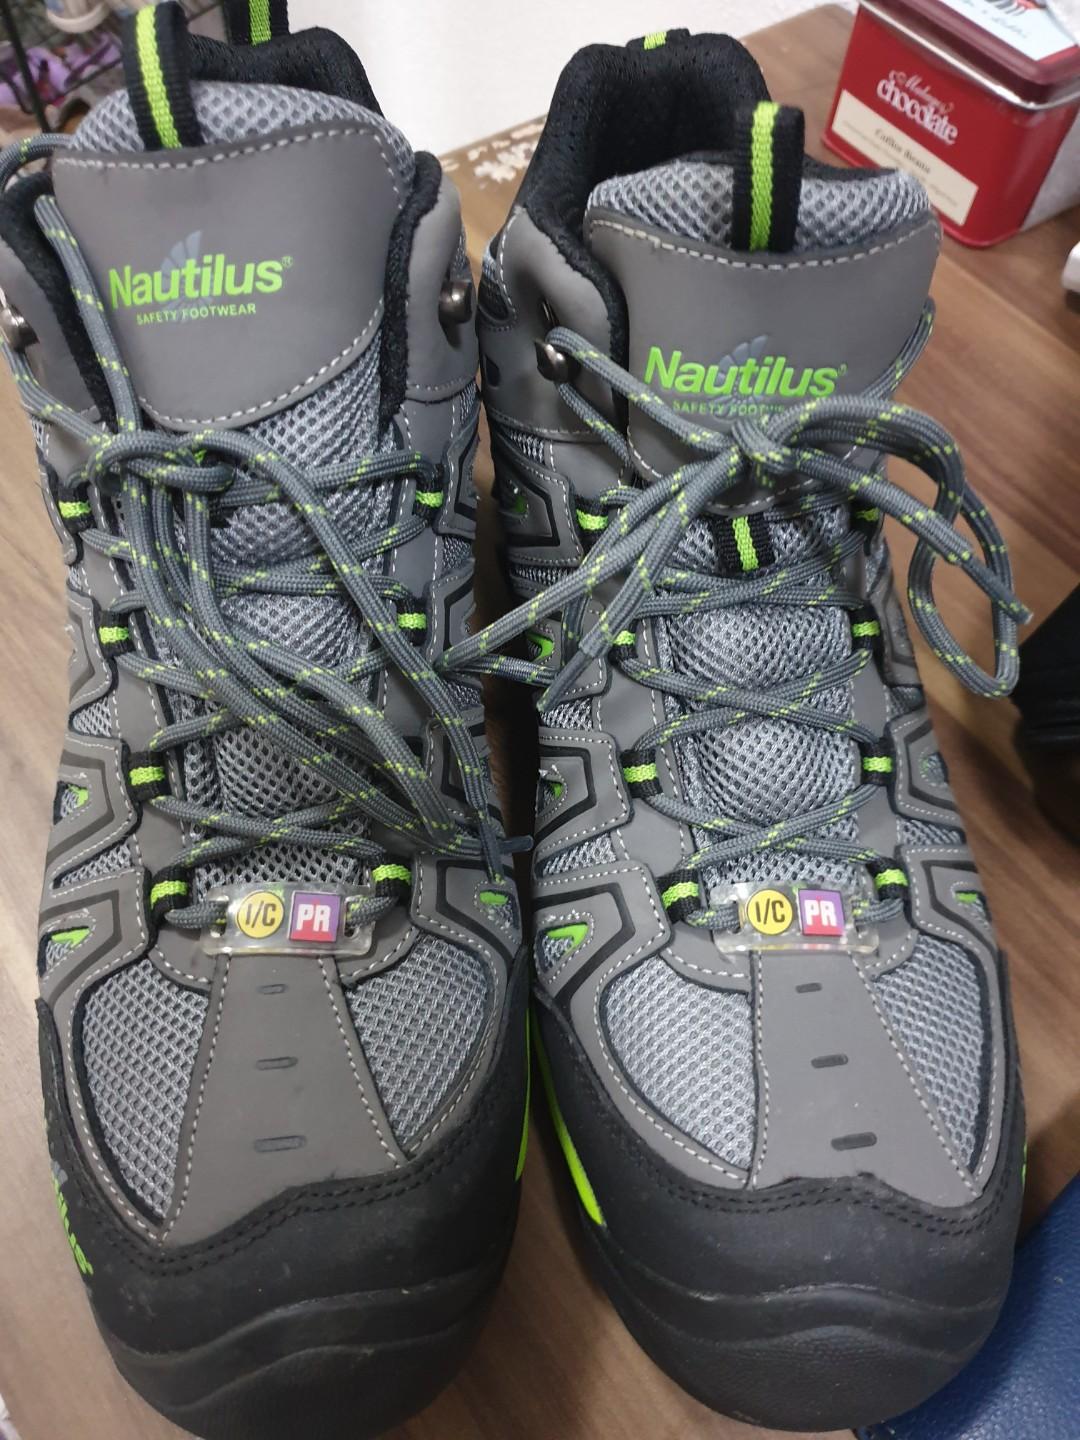 nautilus safety shoes near me